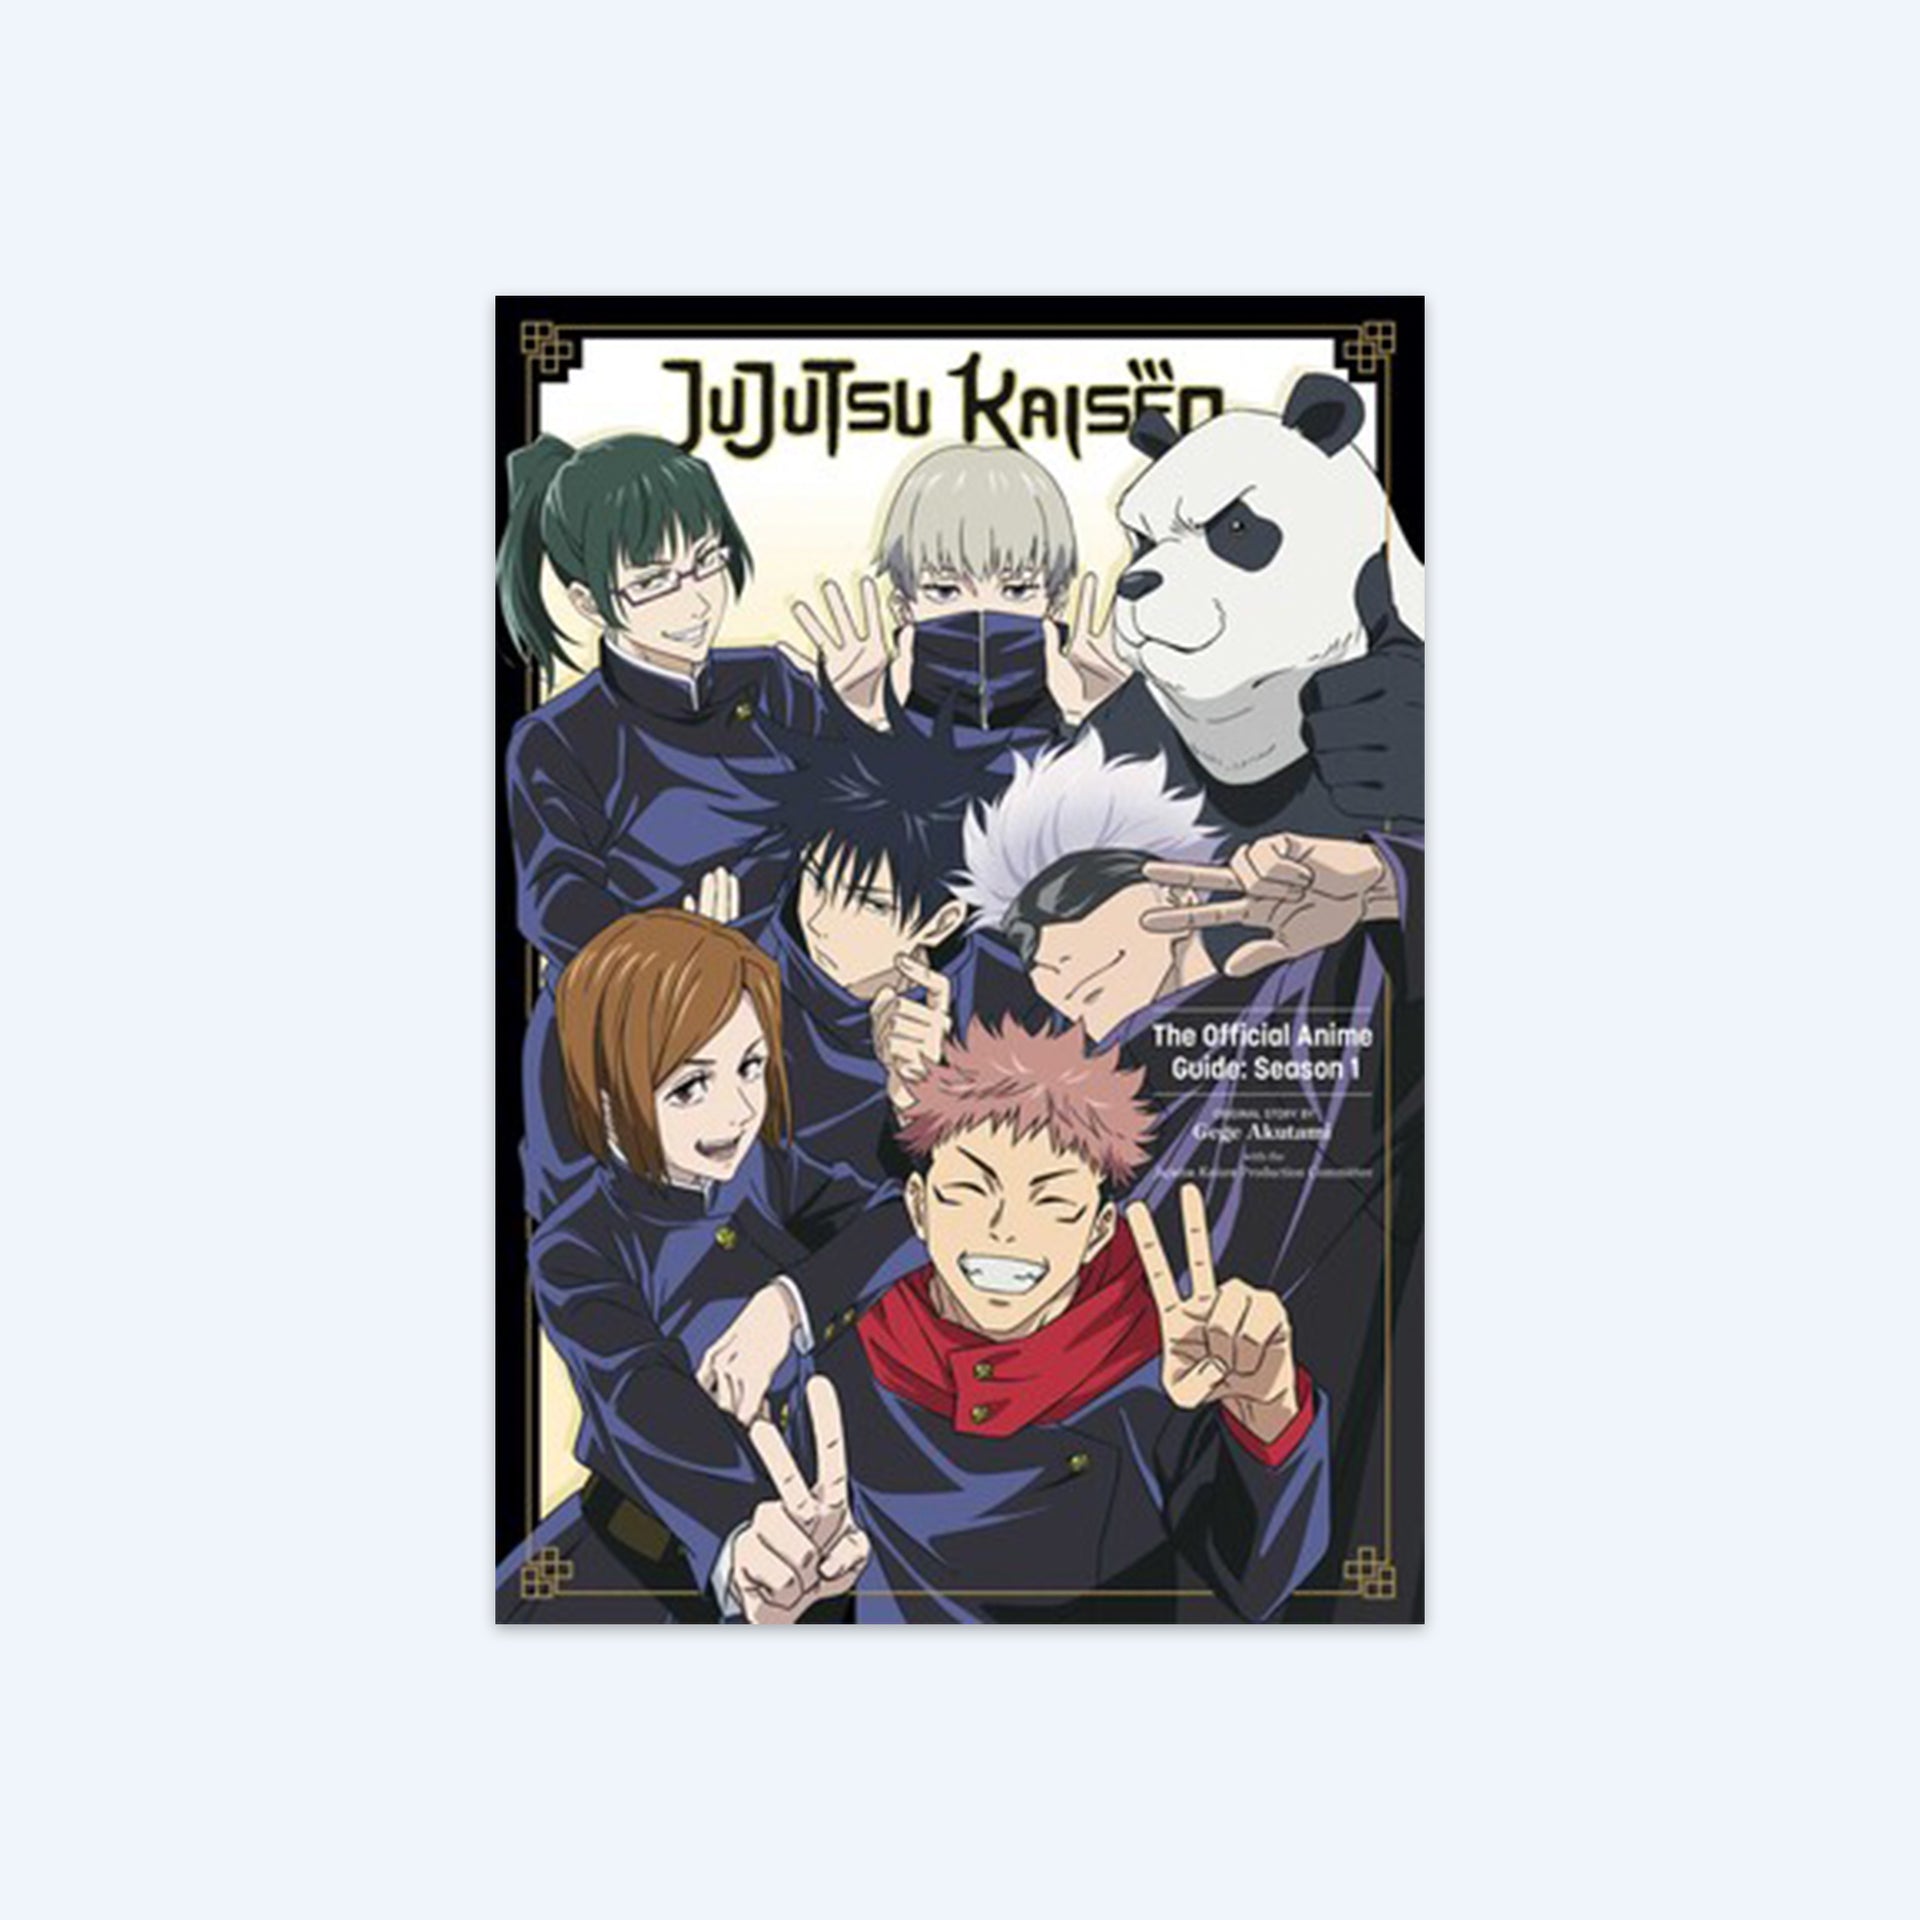 Jujutsu Kaisen: The Official Anime Guide: Season 1  